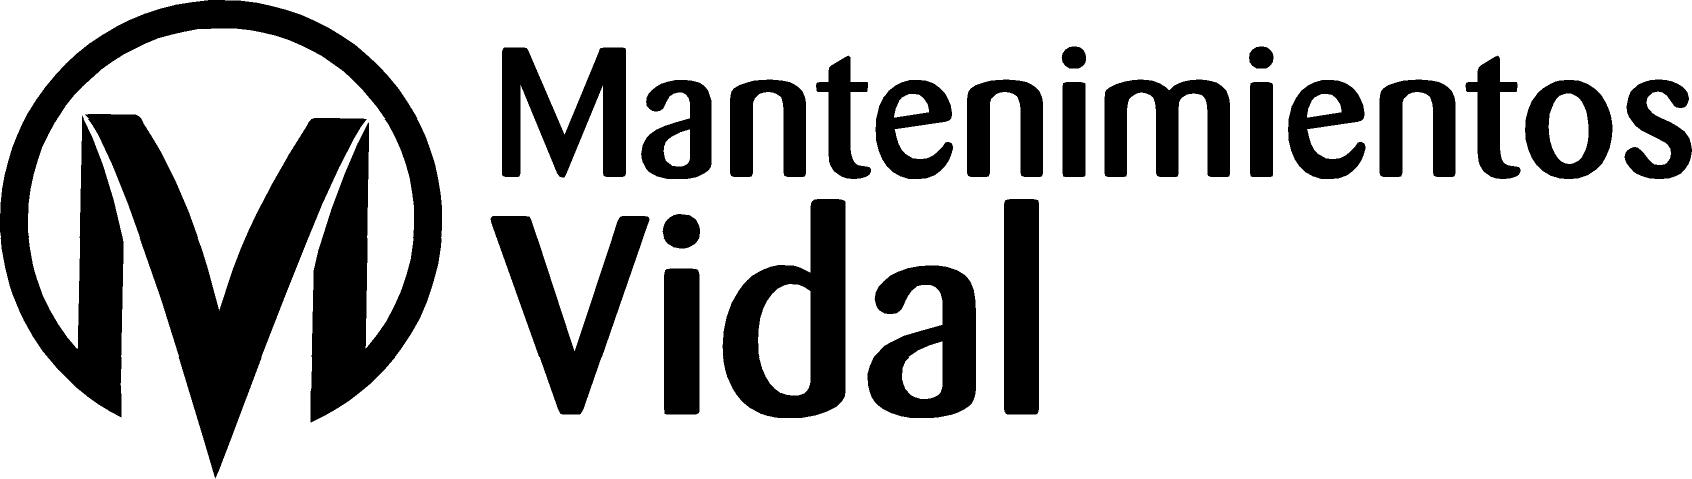 Mantenimientos Vidal logo